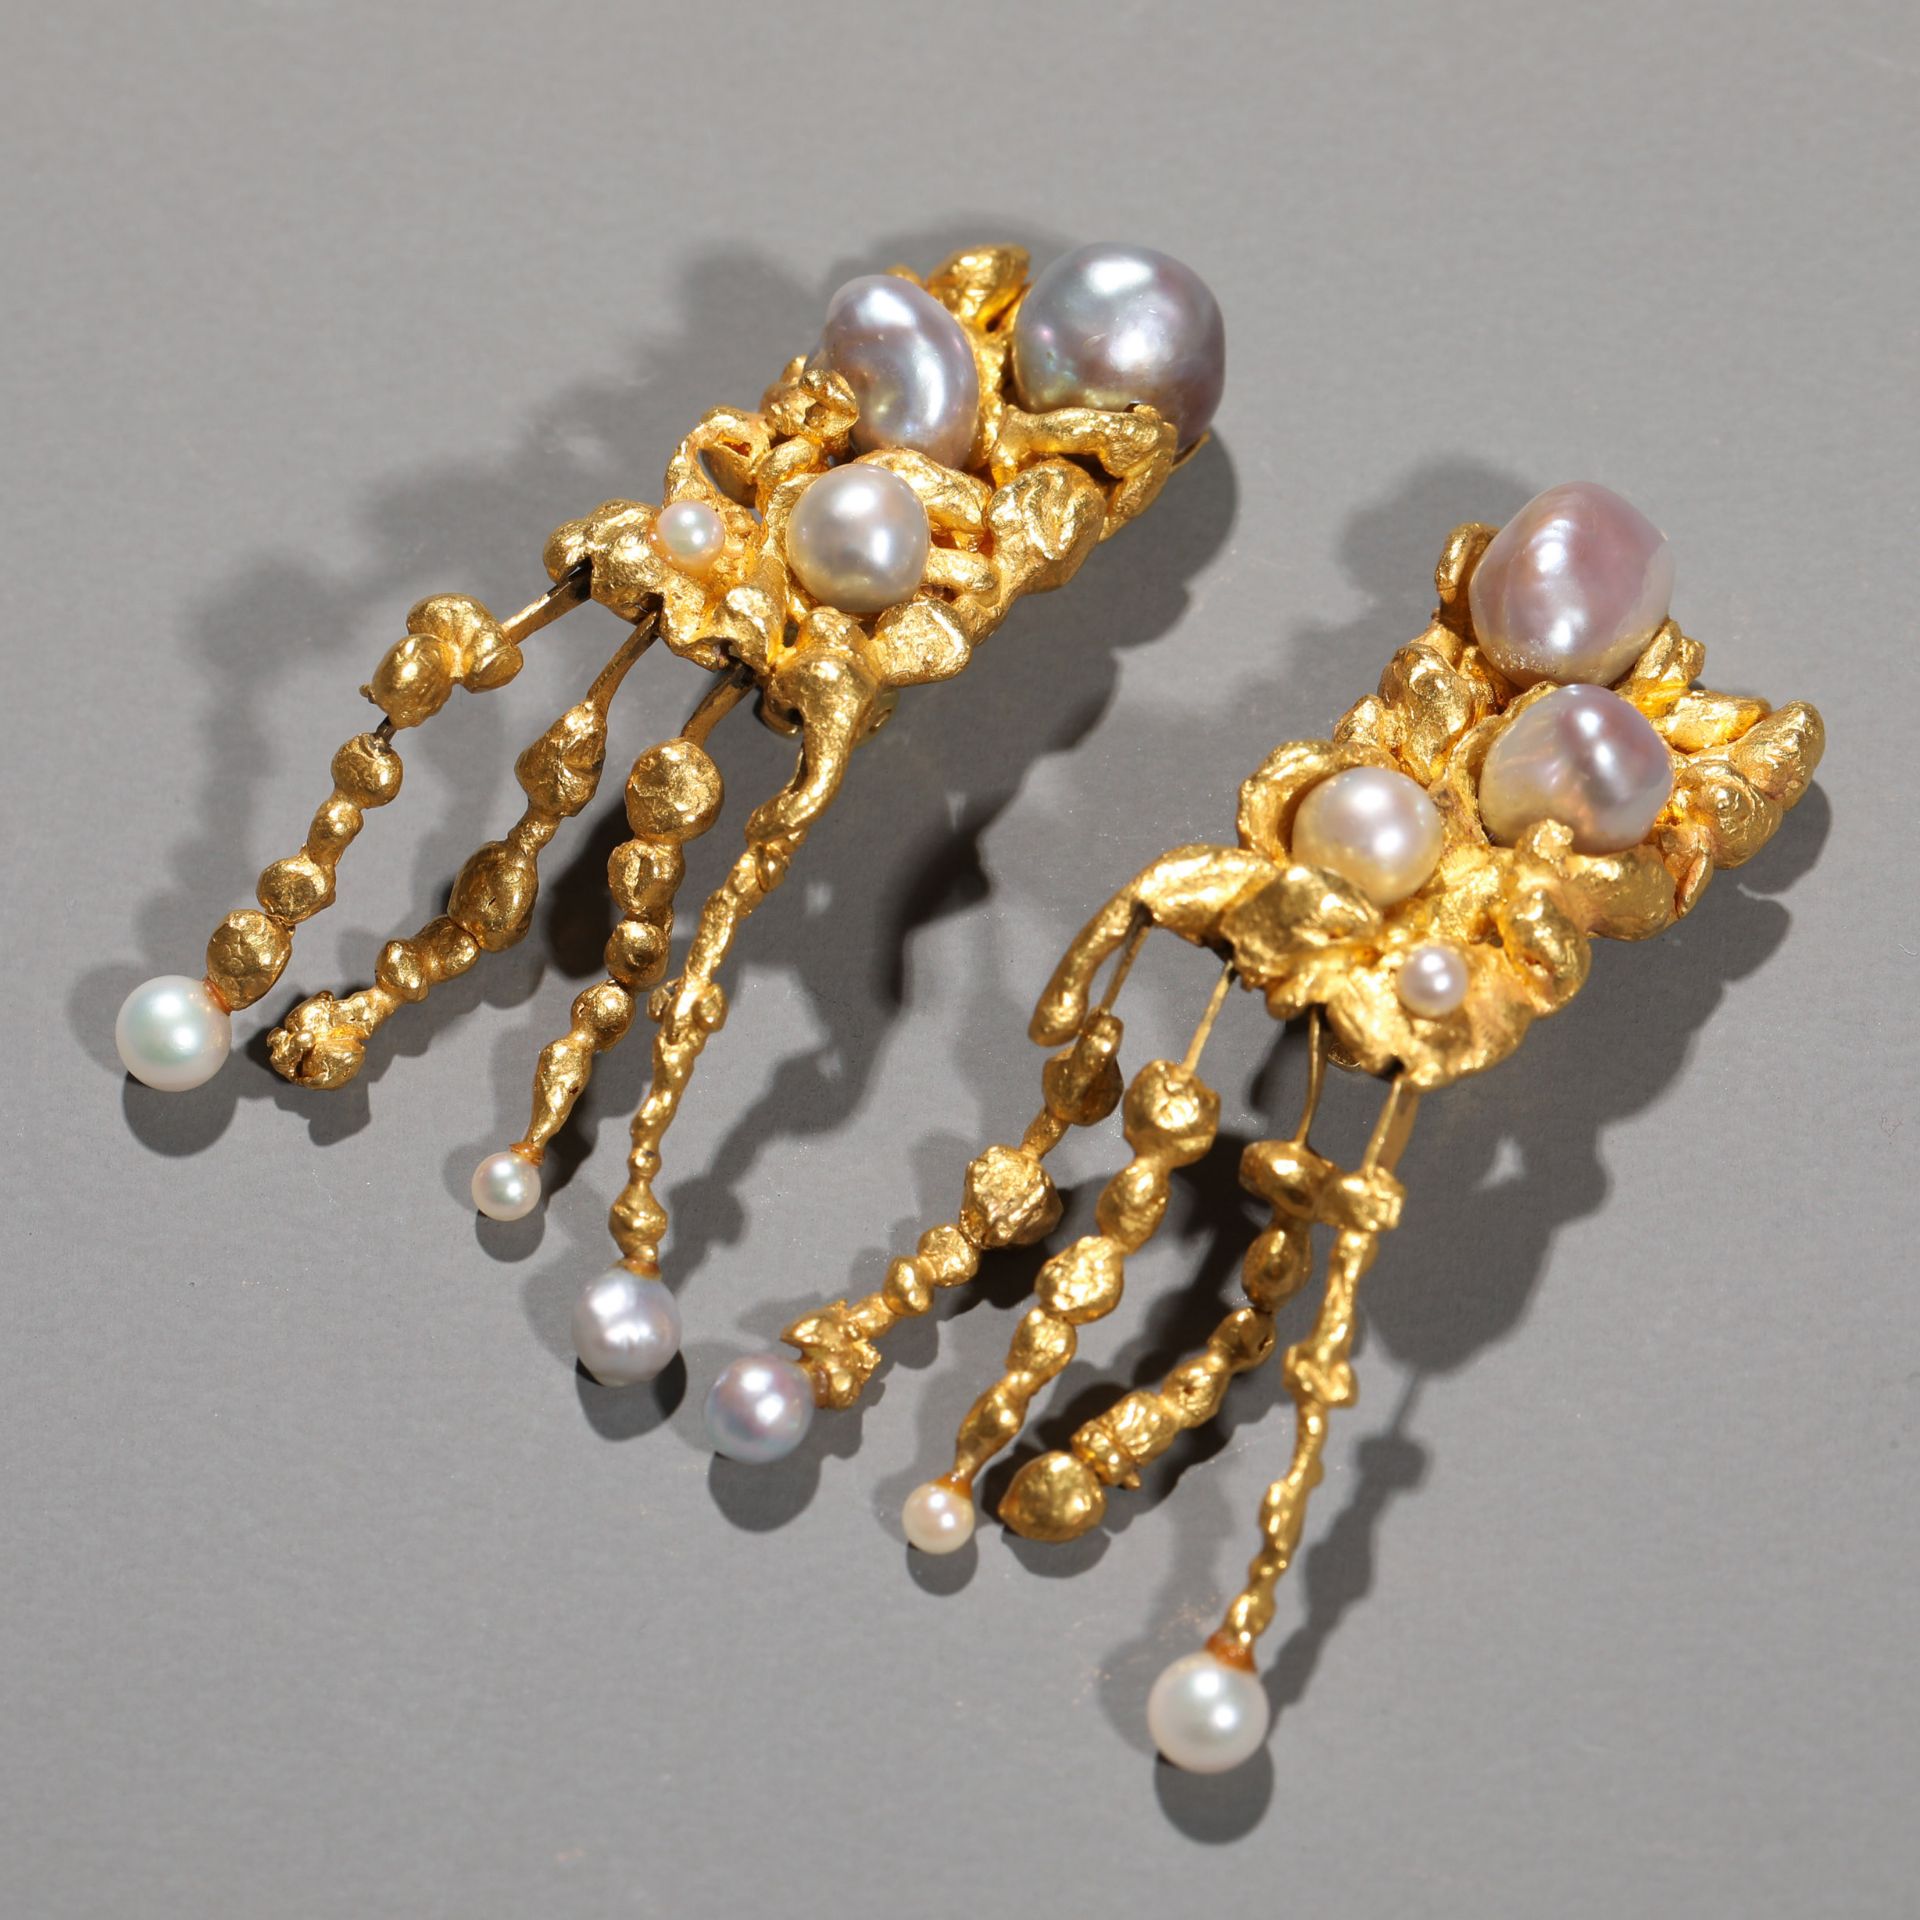 Ebbe Weiss-Weingart, Pair of pearl earrings - Image 4 of 6